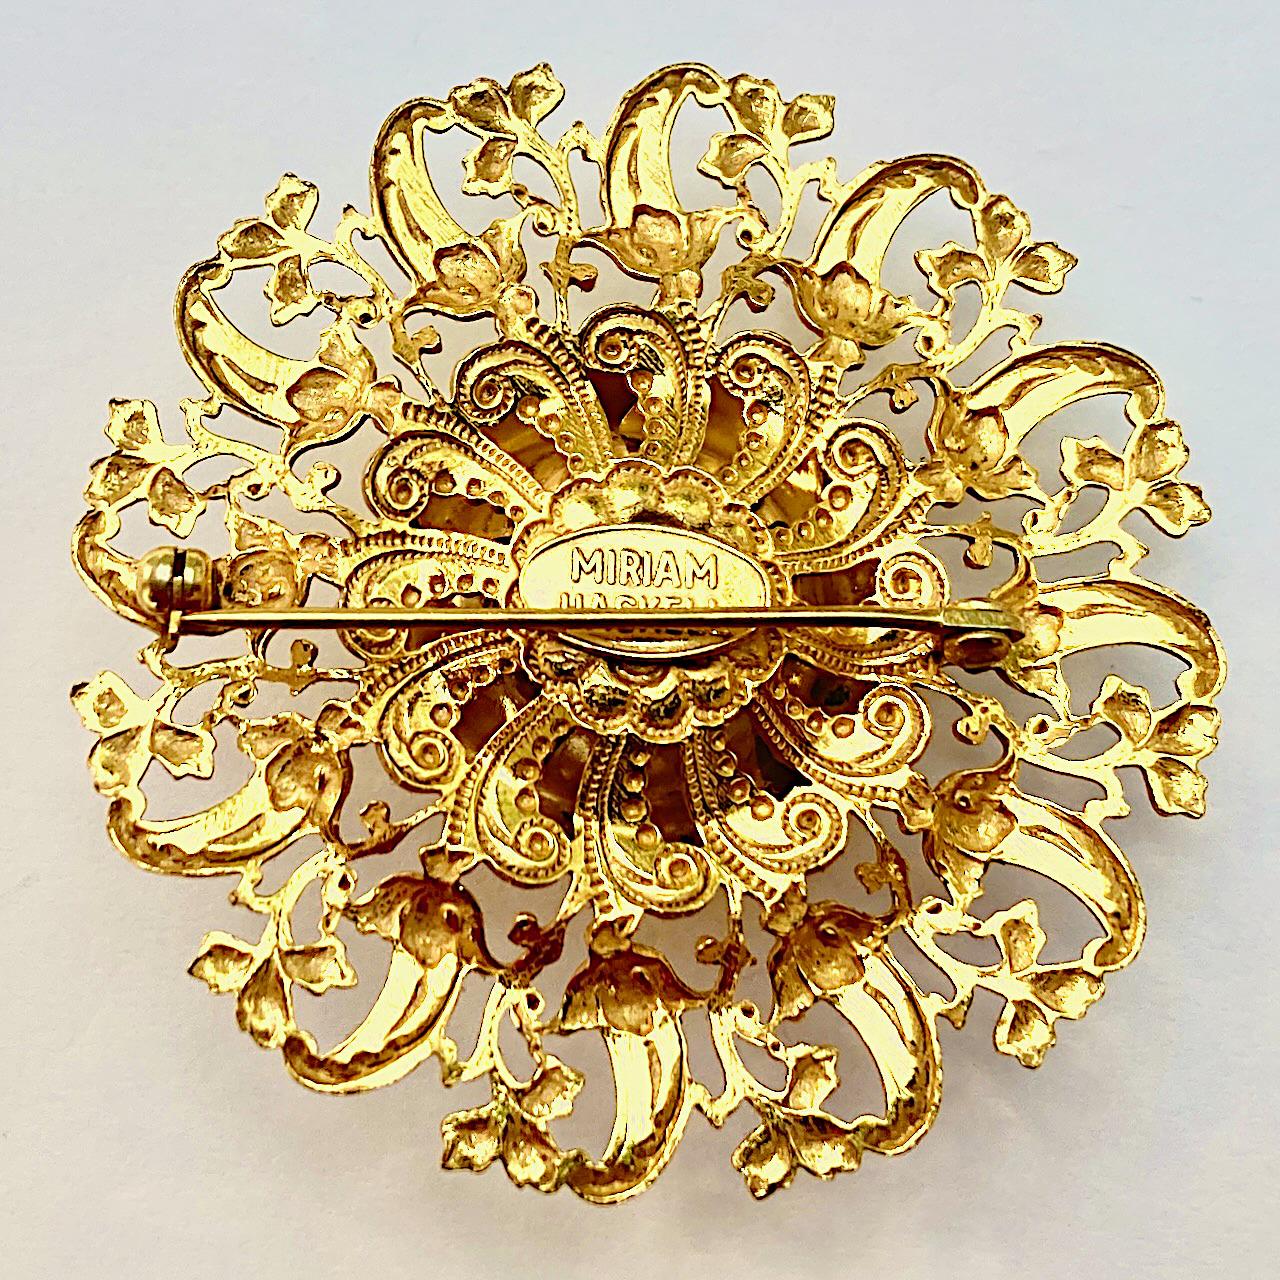 Miriam Haskell, belle broche russe plaquée or, avec un joli motif de fleurs et de feuilles. Diamètre de mesure 5,2 cm / 2 pouces. La broche est en très bon état.

Il s'agit d'une magnifique broche complexe avec la patine d'or russe de Haskell. Circa